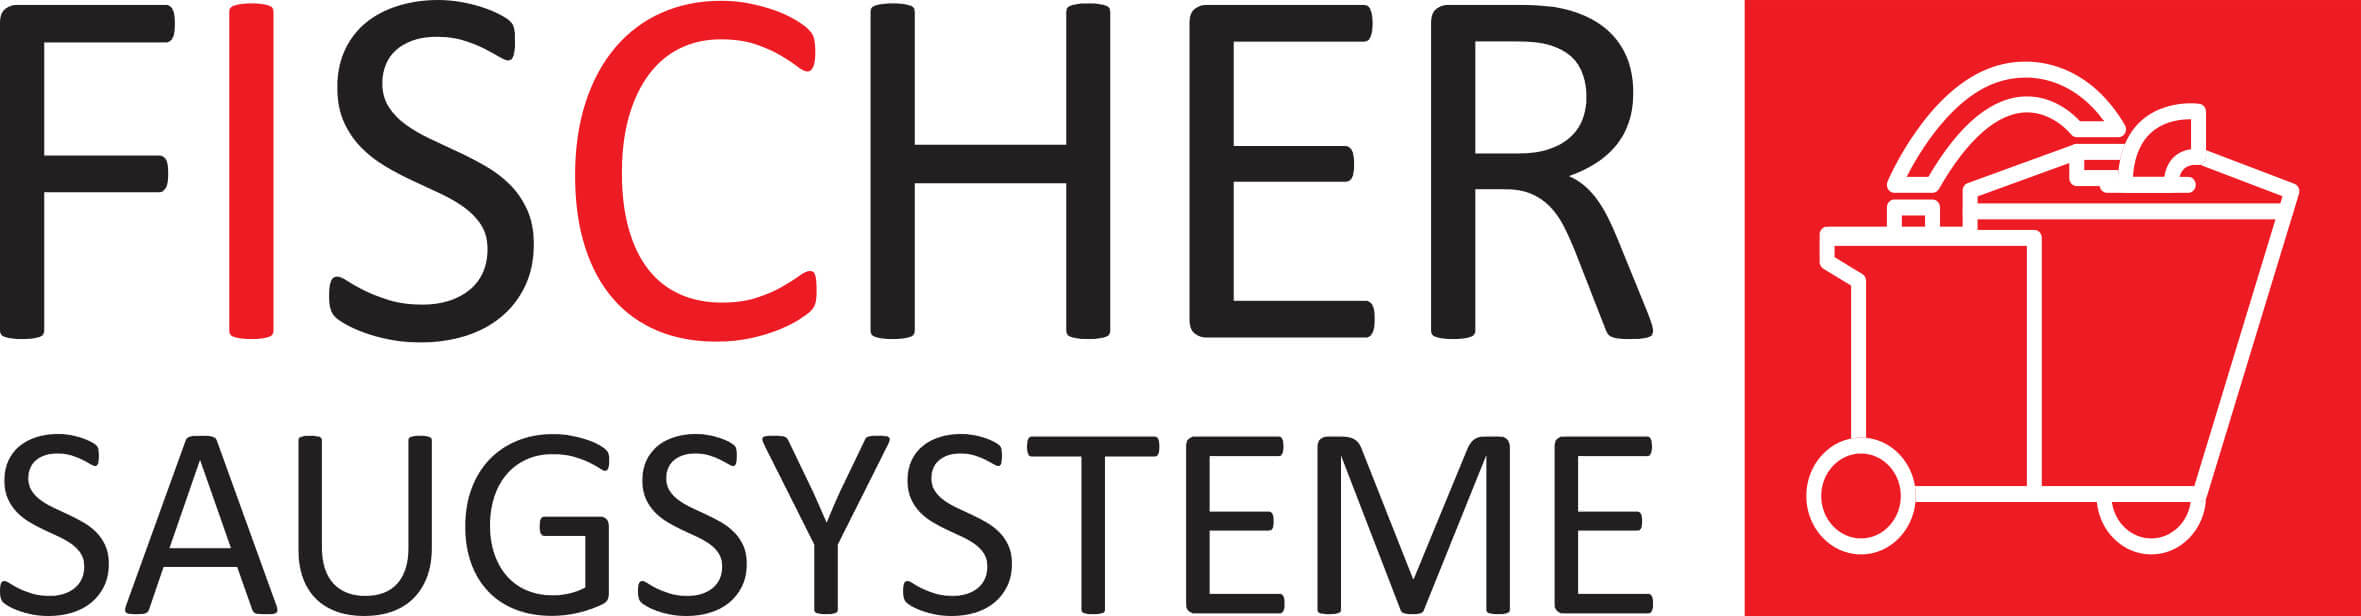 Fischer Saugsysteme Logo